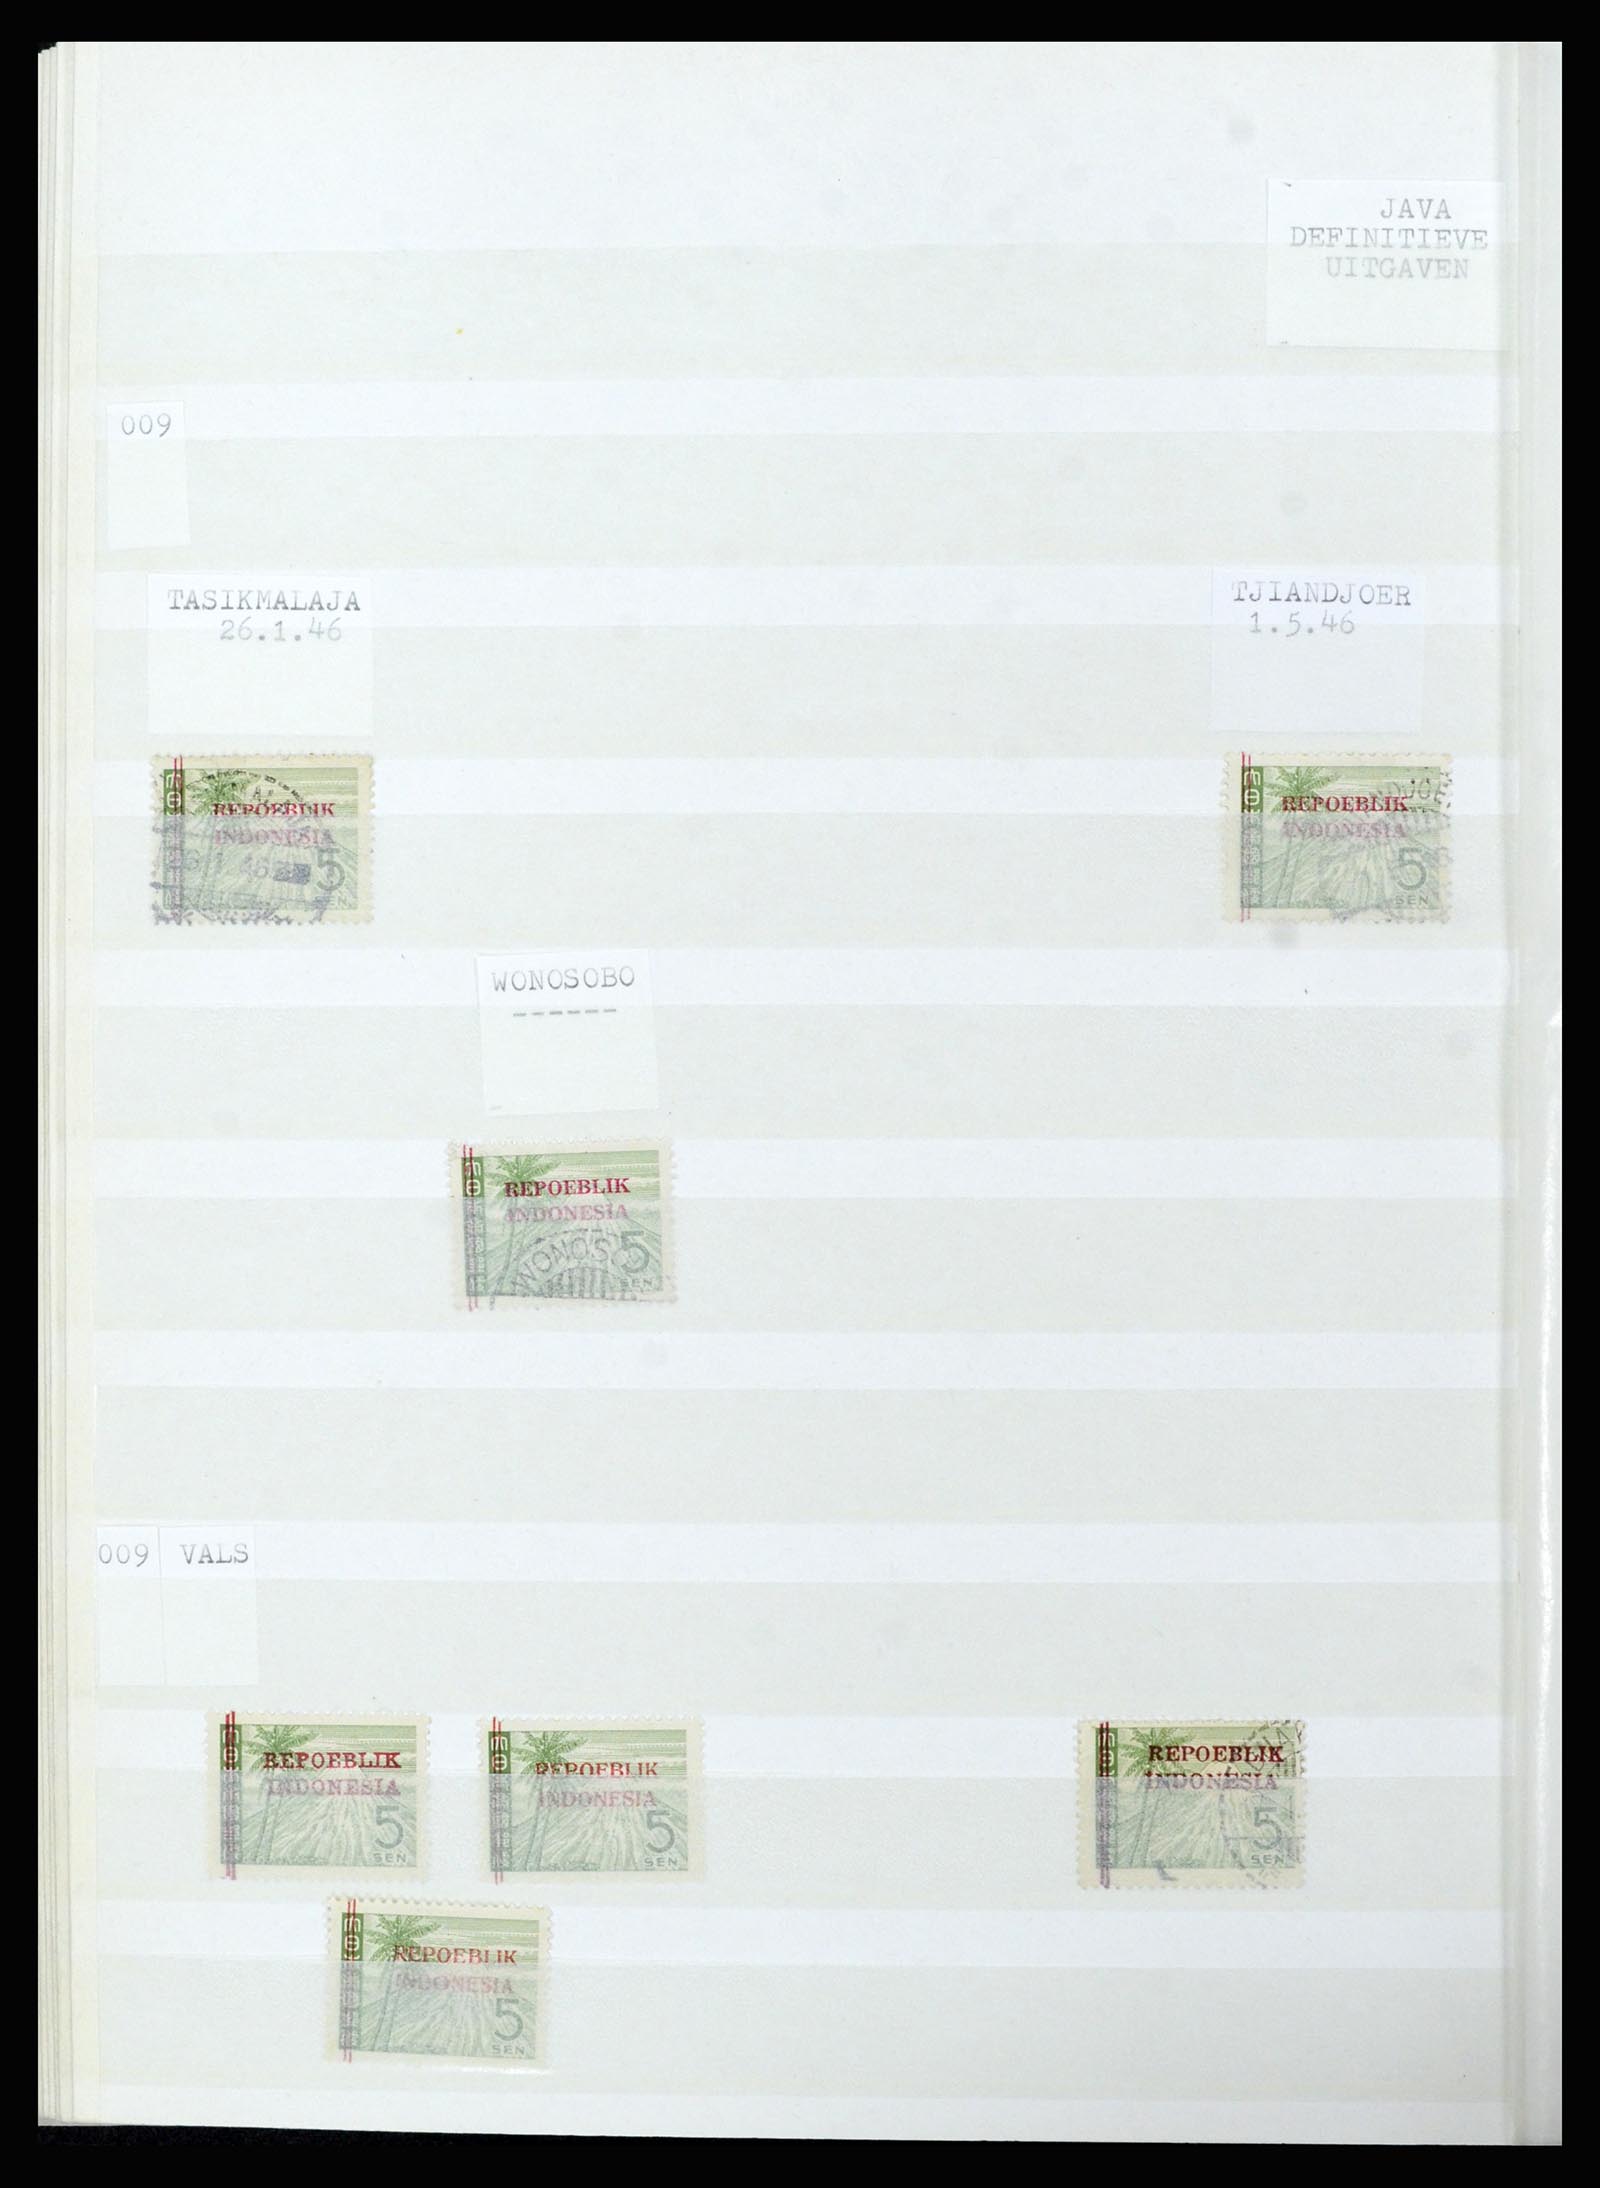 36742 316 - Stamp collection 36742 Dutch Indies interim period 1945-1949.